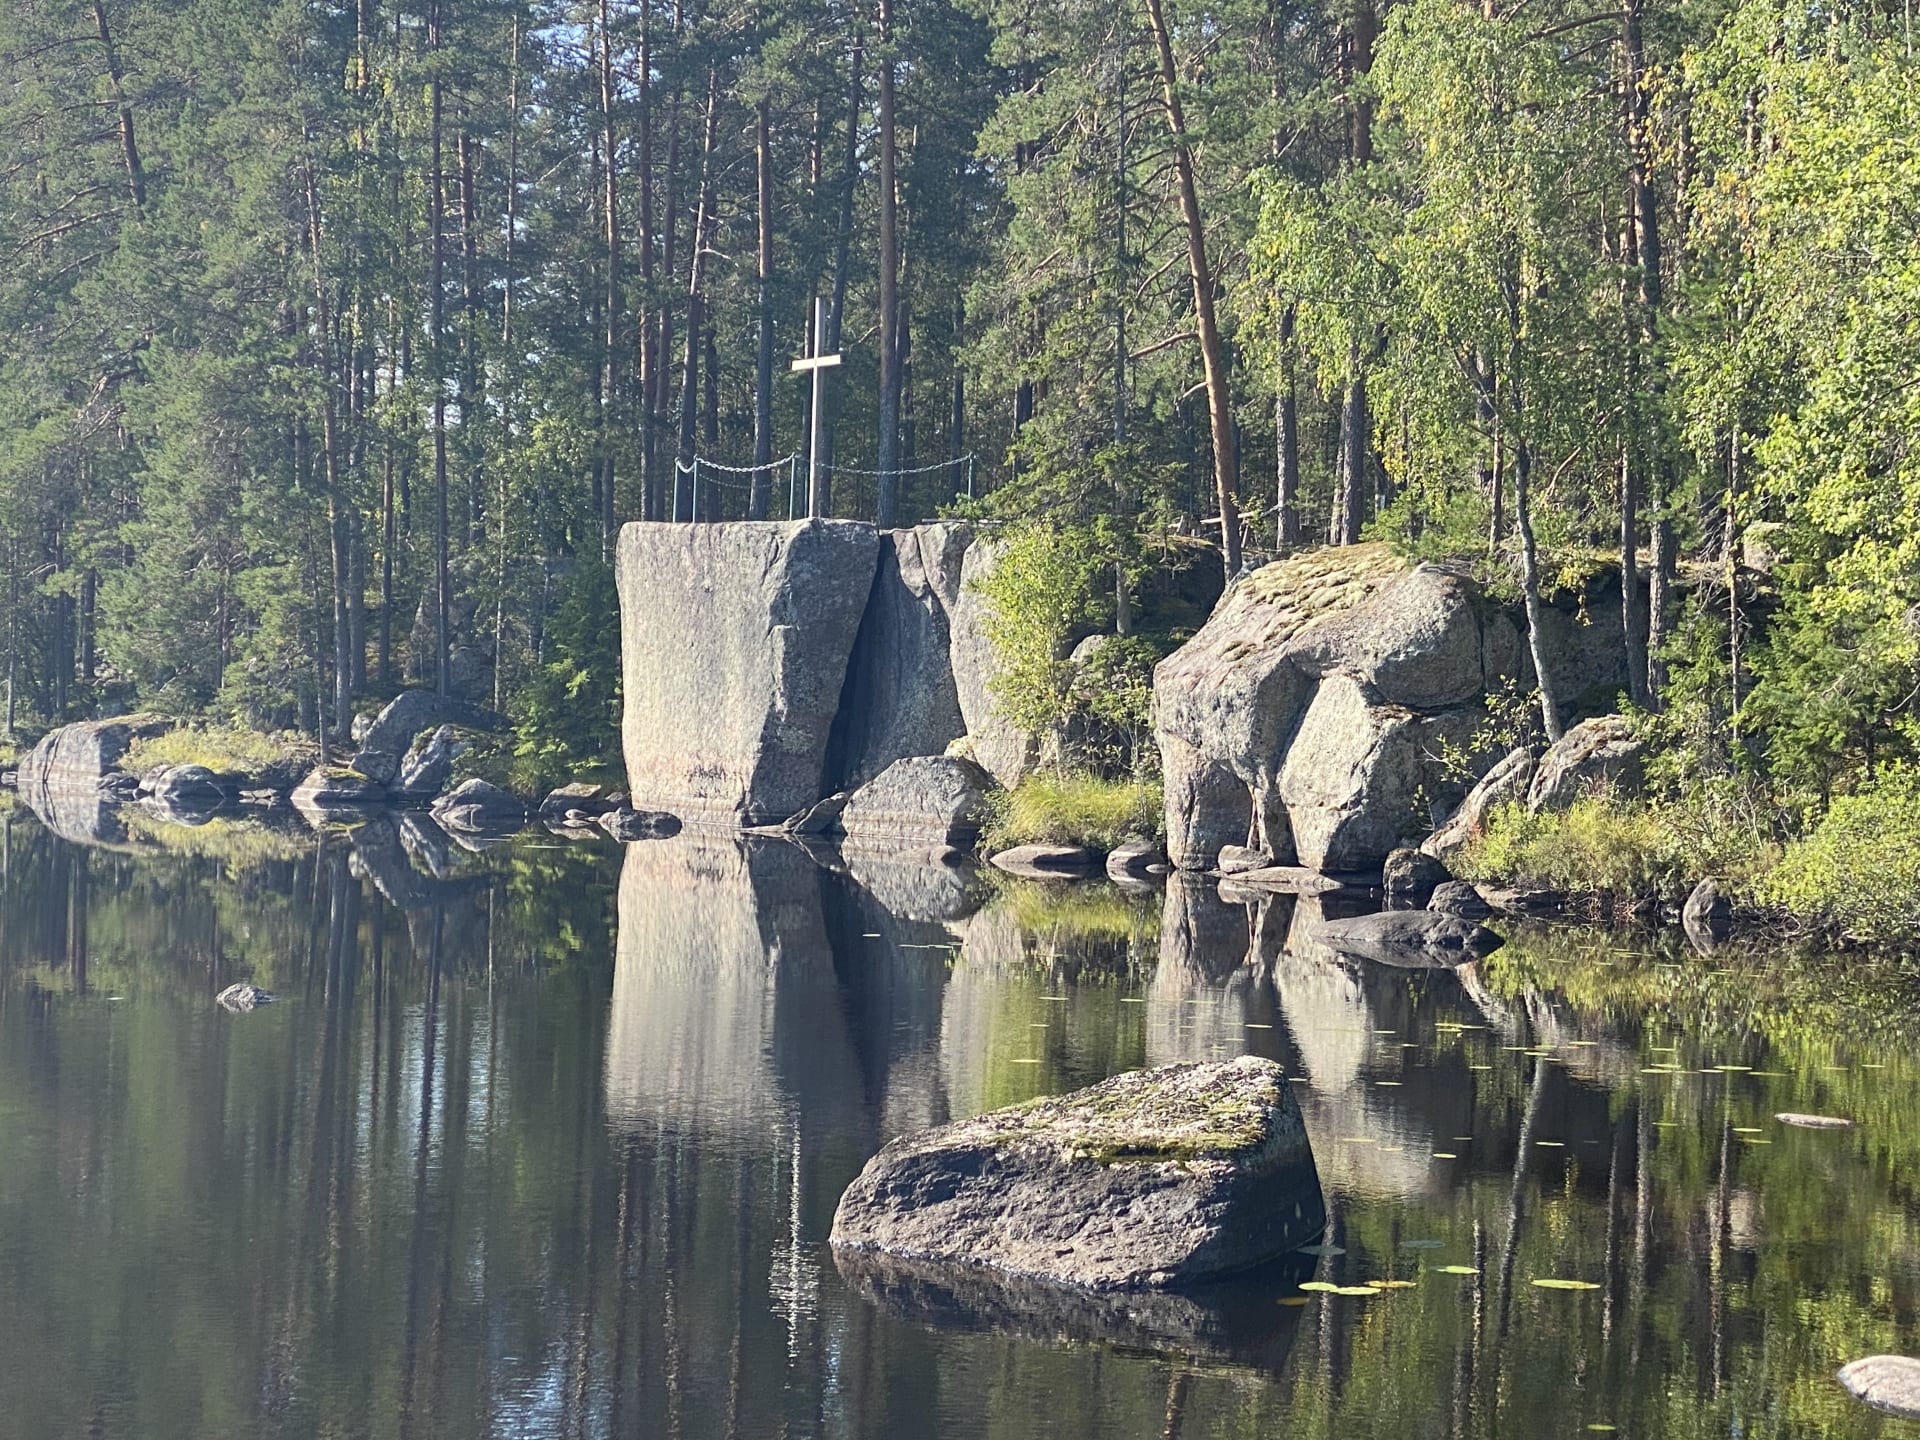 Messukallio rocks by the lake.